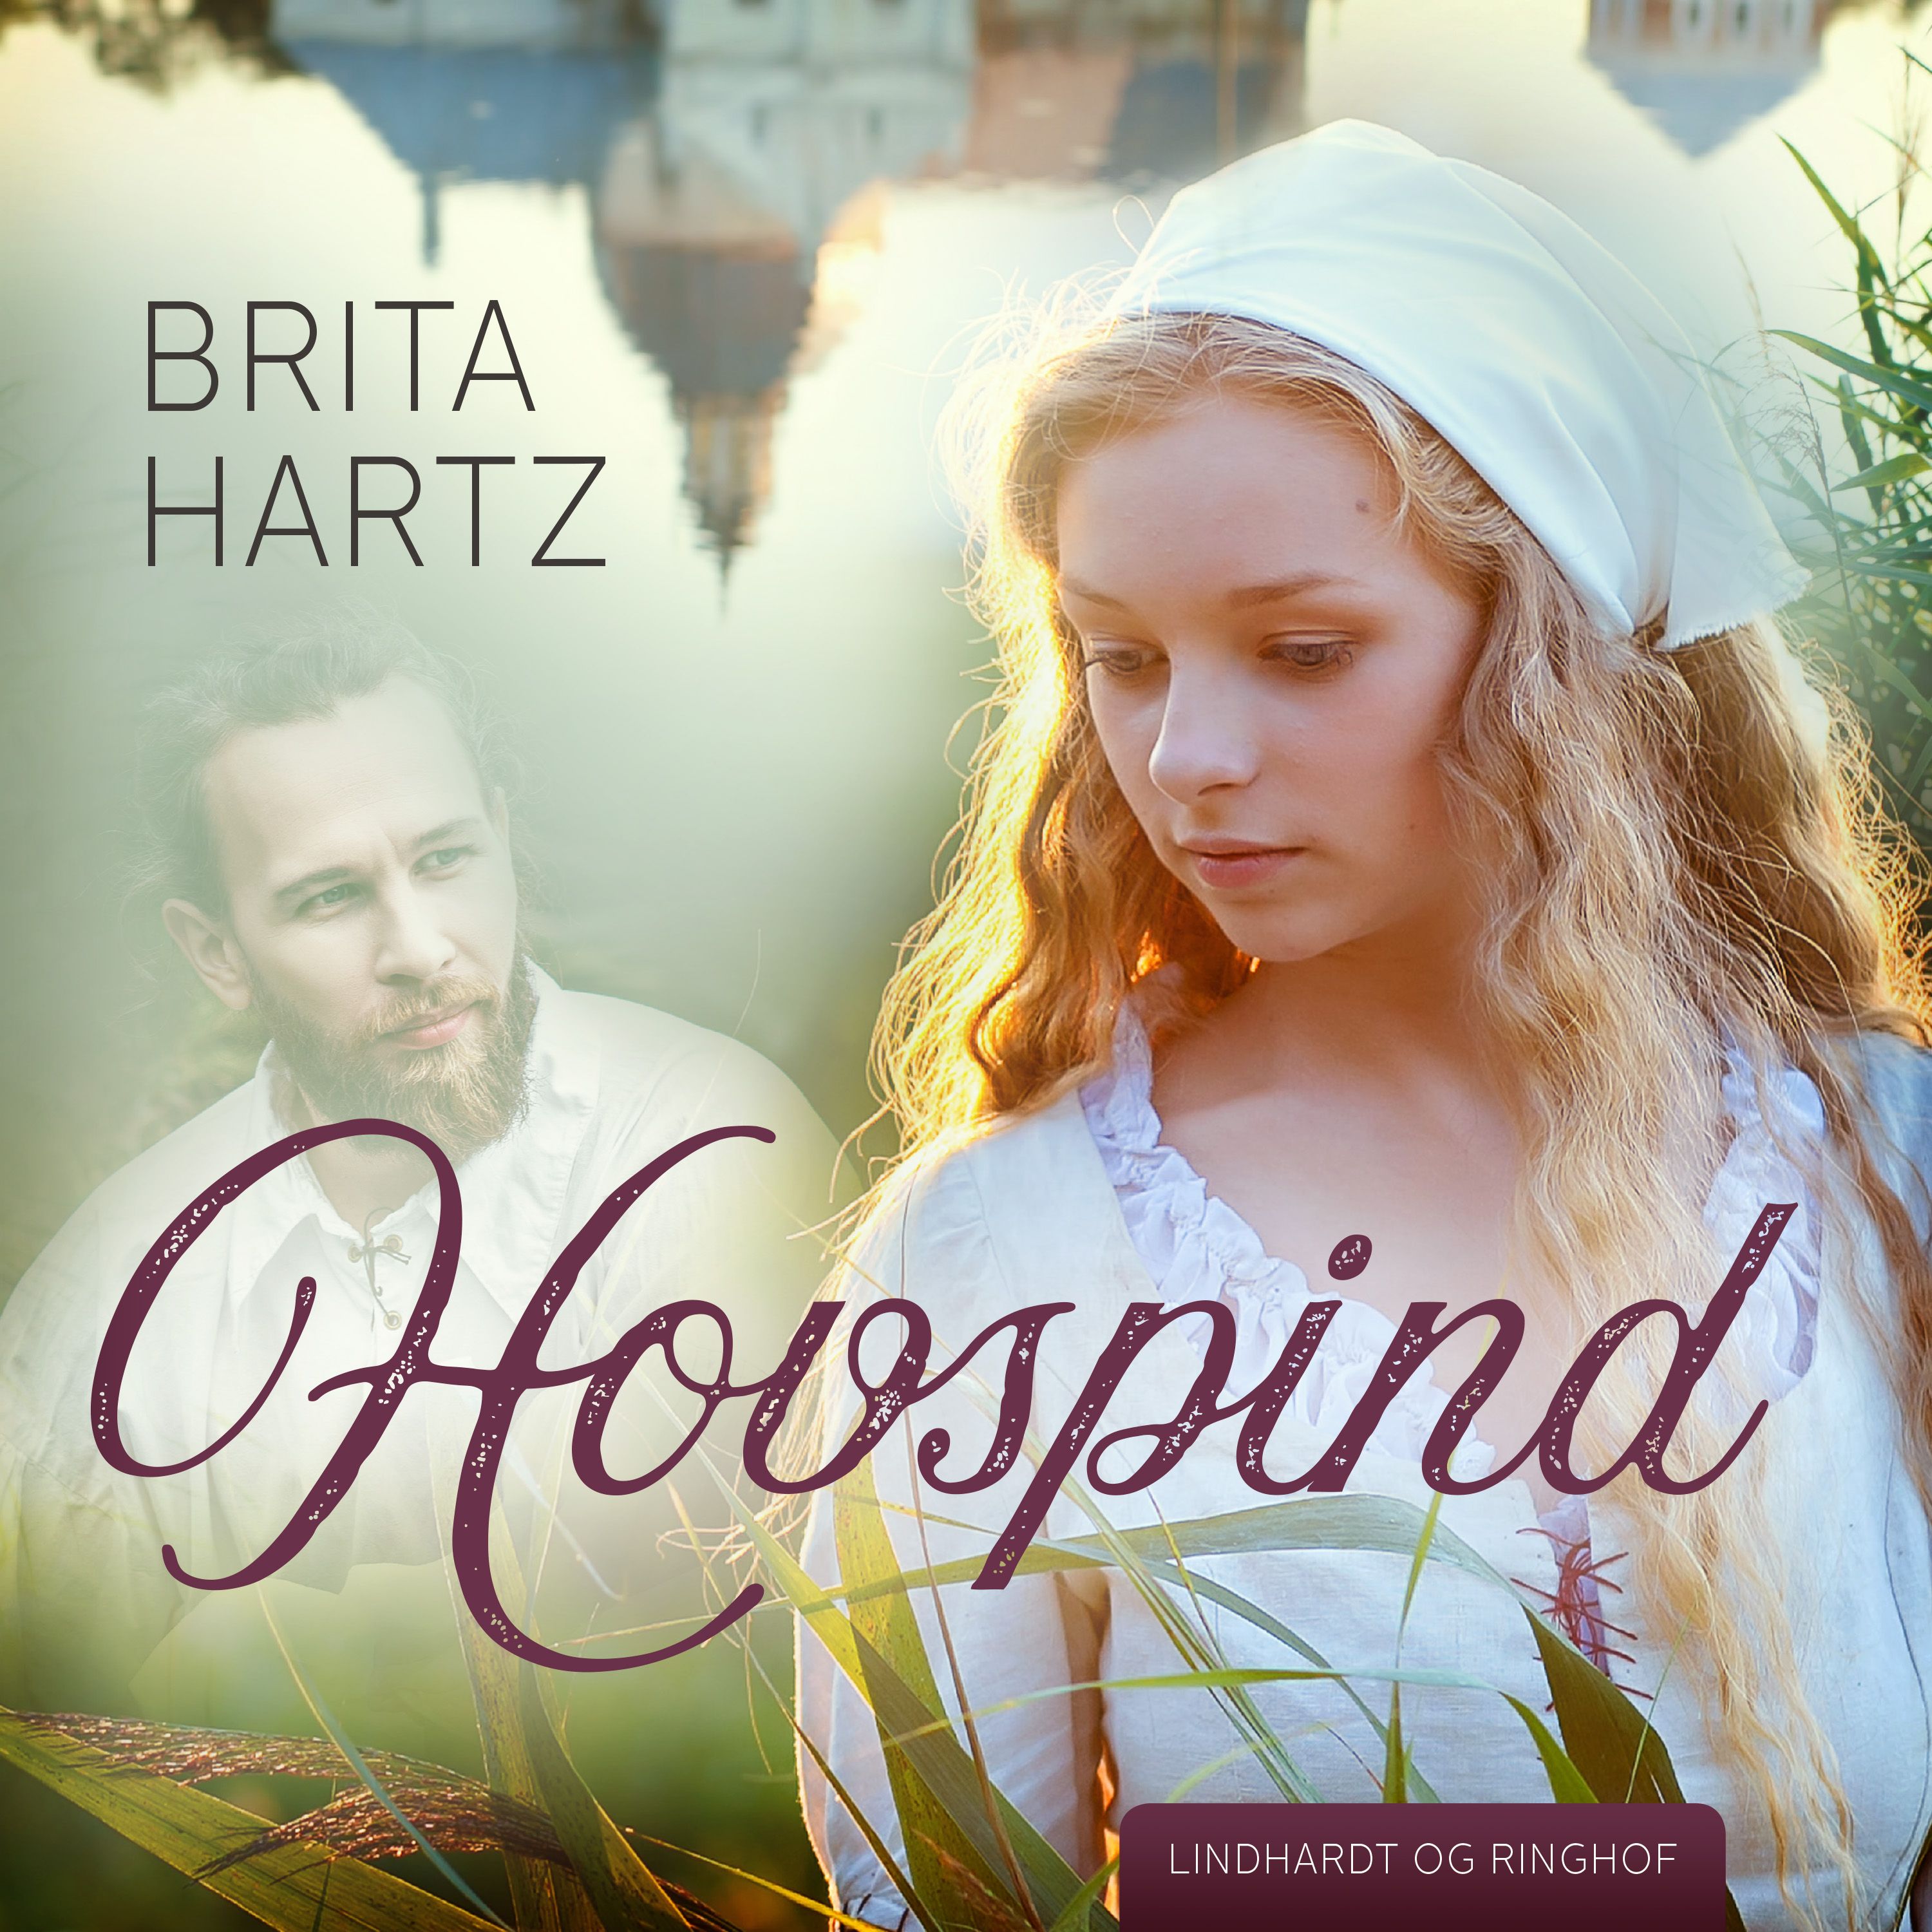 Hovspind, ljudbok av Brita Hartz